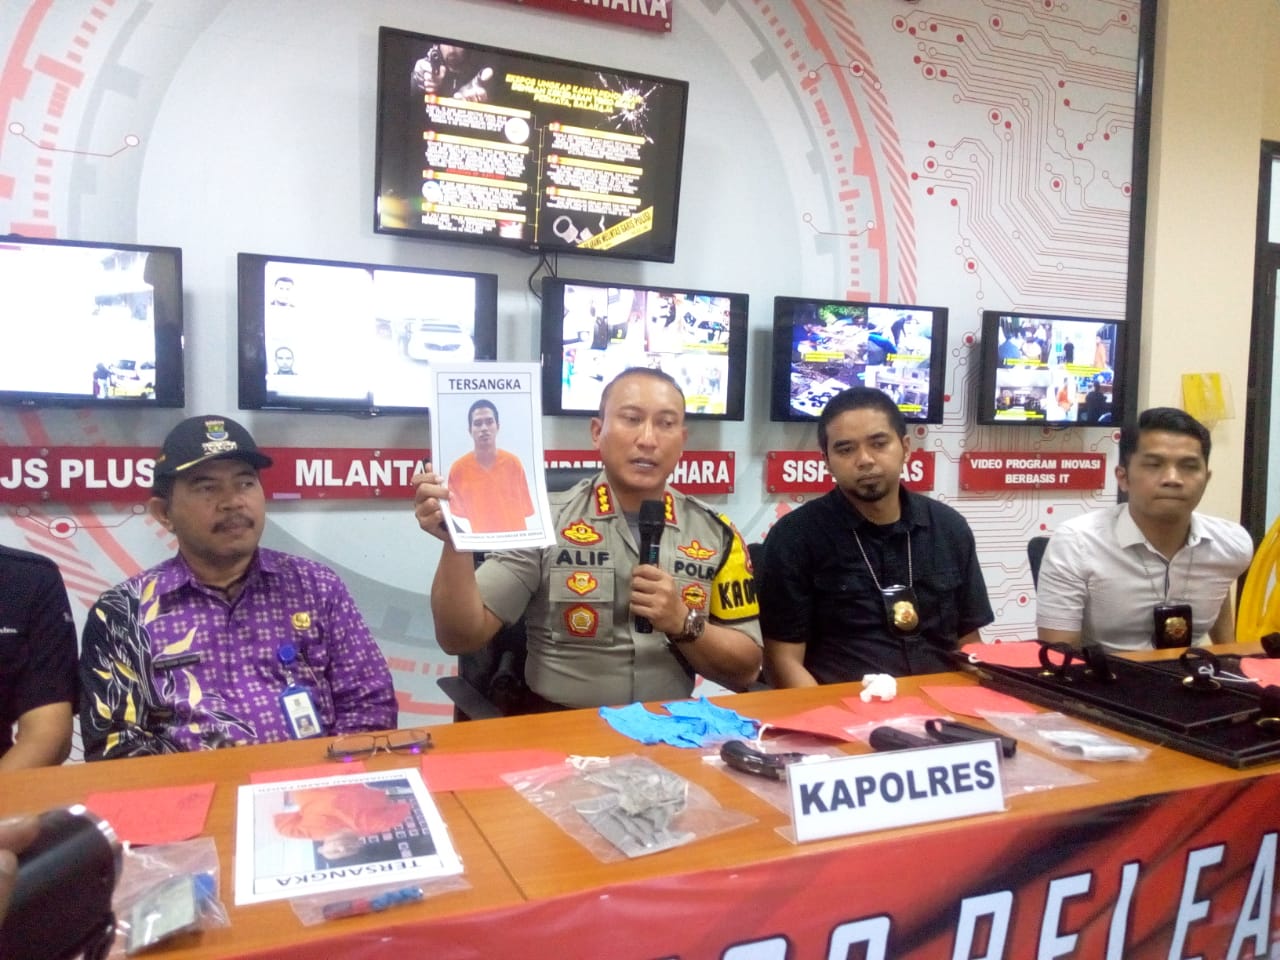 Kapolresta Tangerang Kombes Sabilul Alif menunjukan foto pelaku perampokan toko emas di Balaraja.